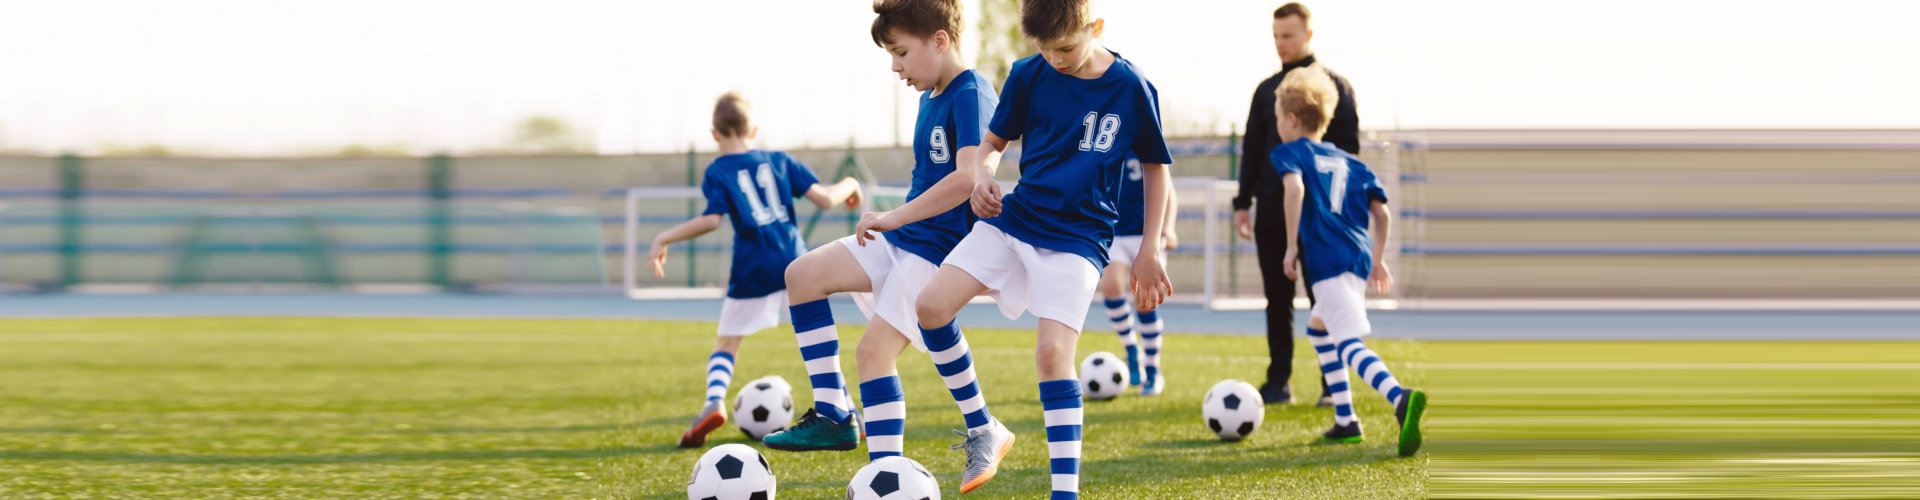 soccer training exercises for kids